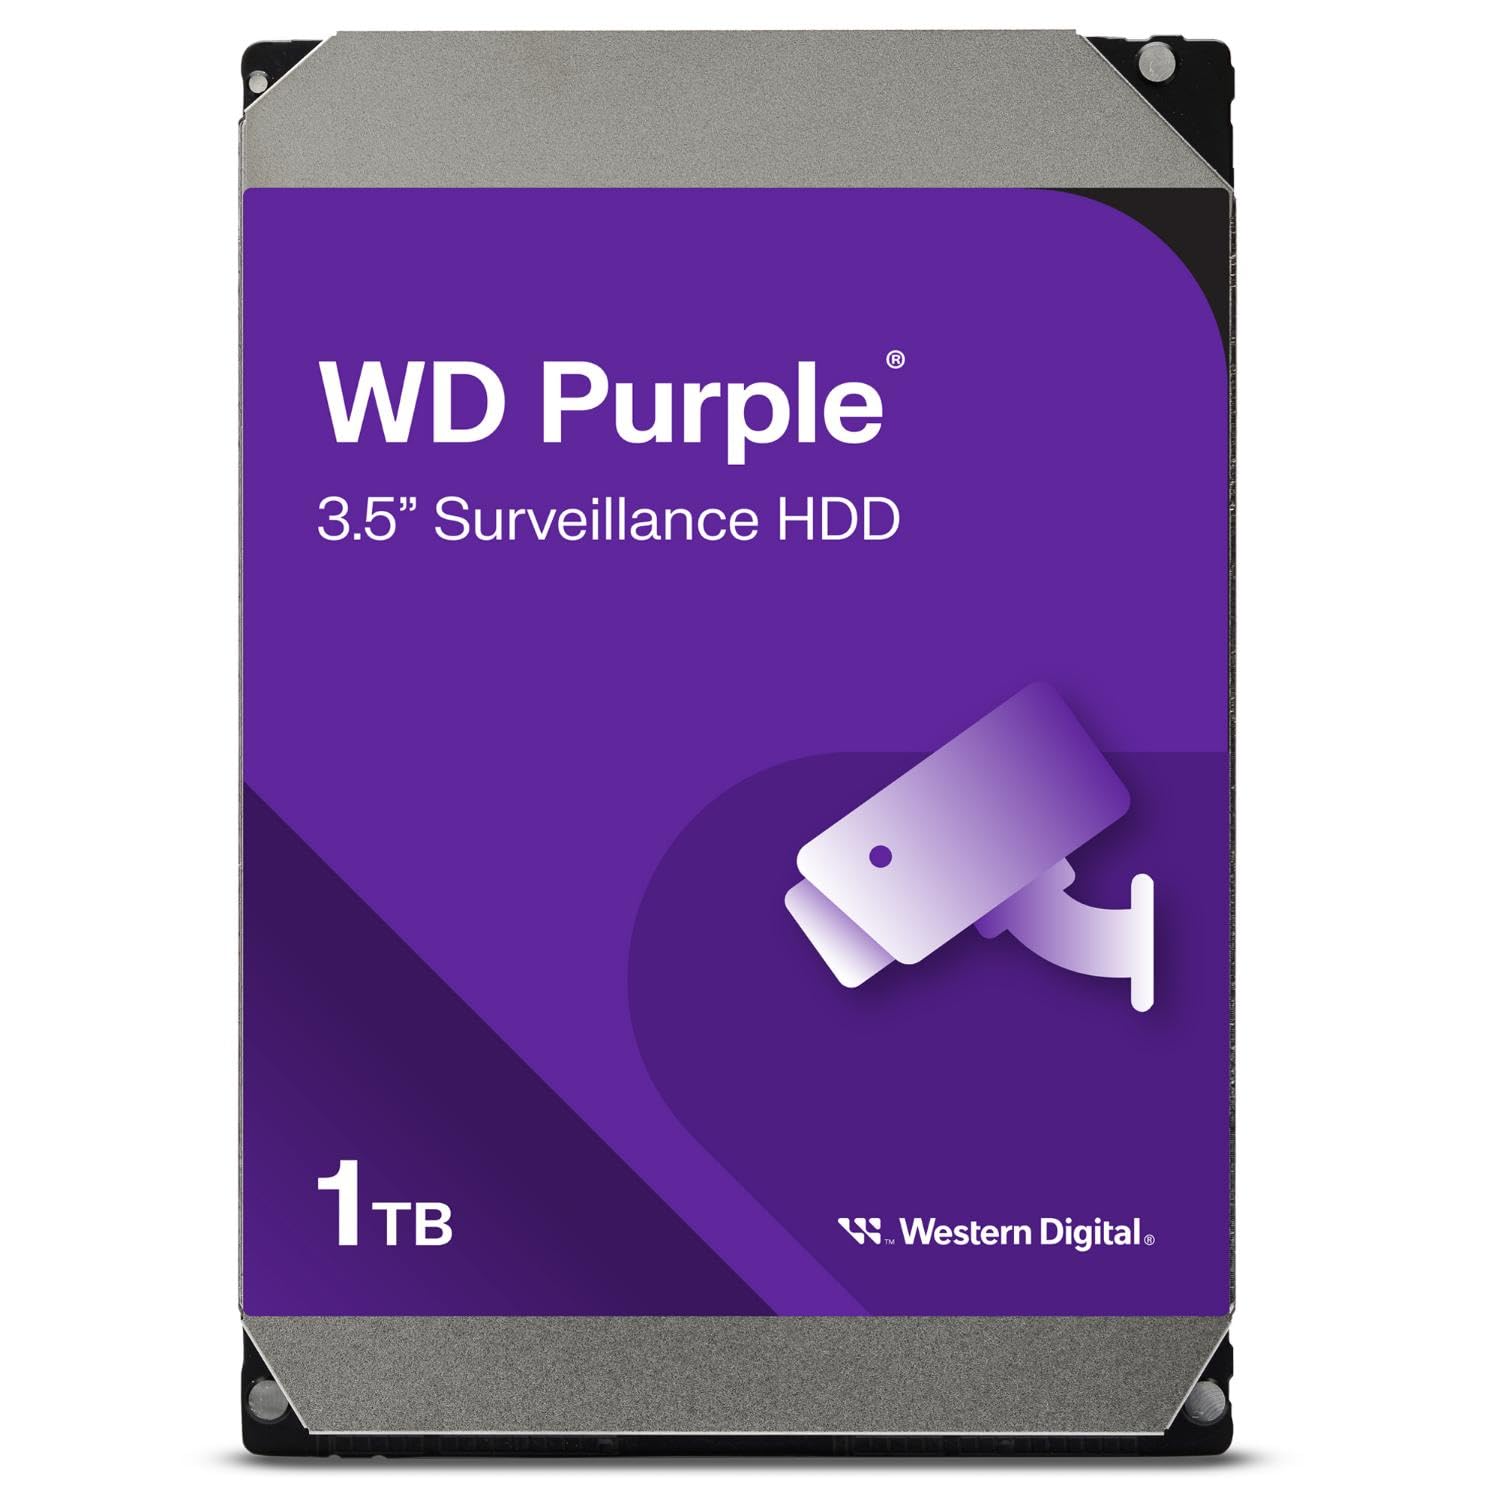 WD Purple 1TB CMR Surveillance Hard Drive